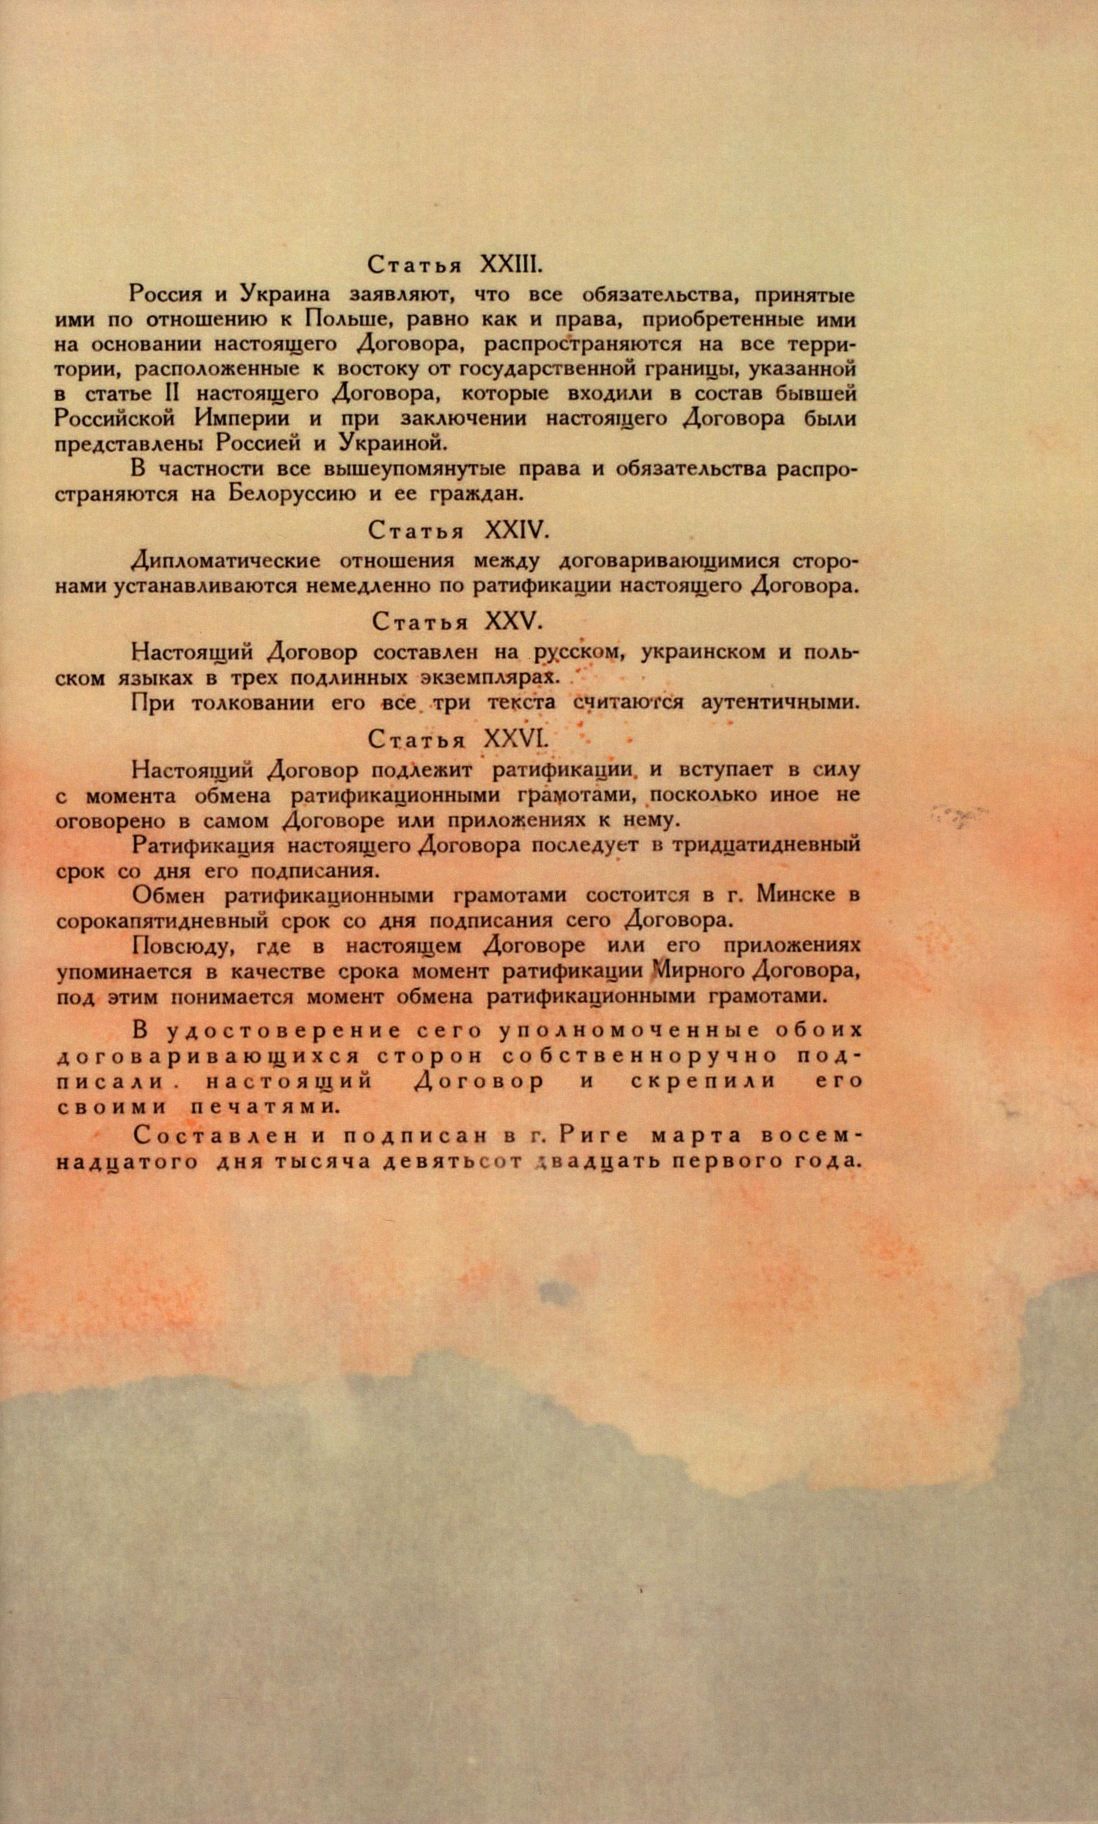 Traktat Pokoju między Polską a Rosją i Ukrainą podpisany w Rydze dnia 18 marca 1921 roku, s. 87, MSZ, sygn. 6739.